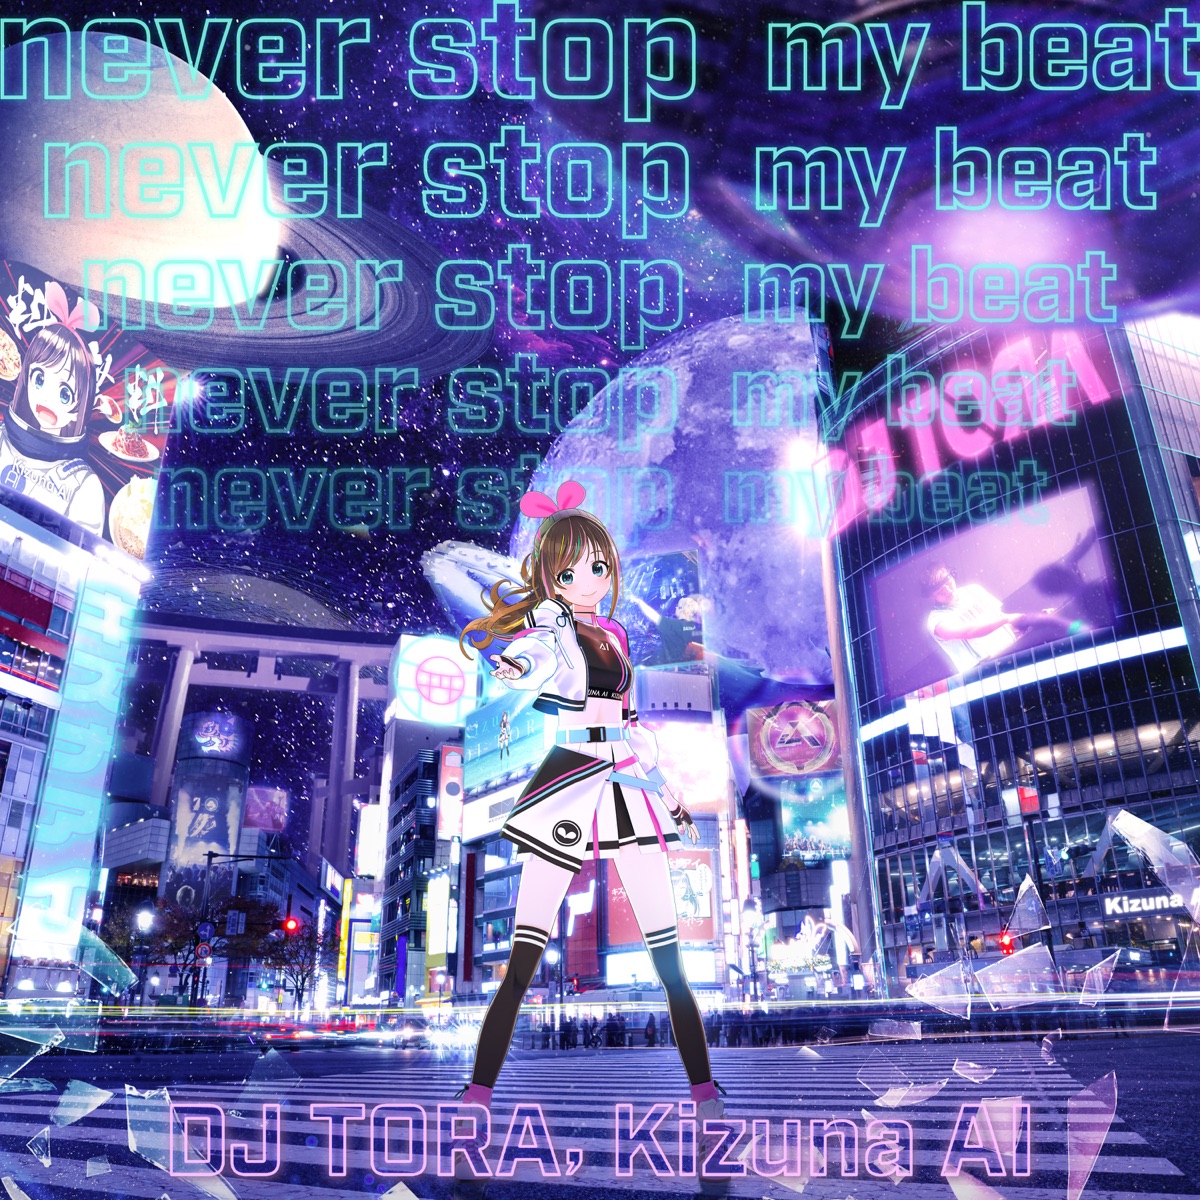 『DJ TORA & Kizuna AI - never stop my beat』収録の『never stop my beat』ジャケット